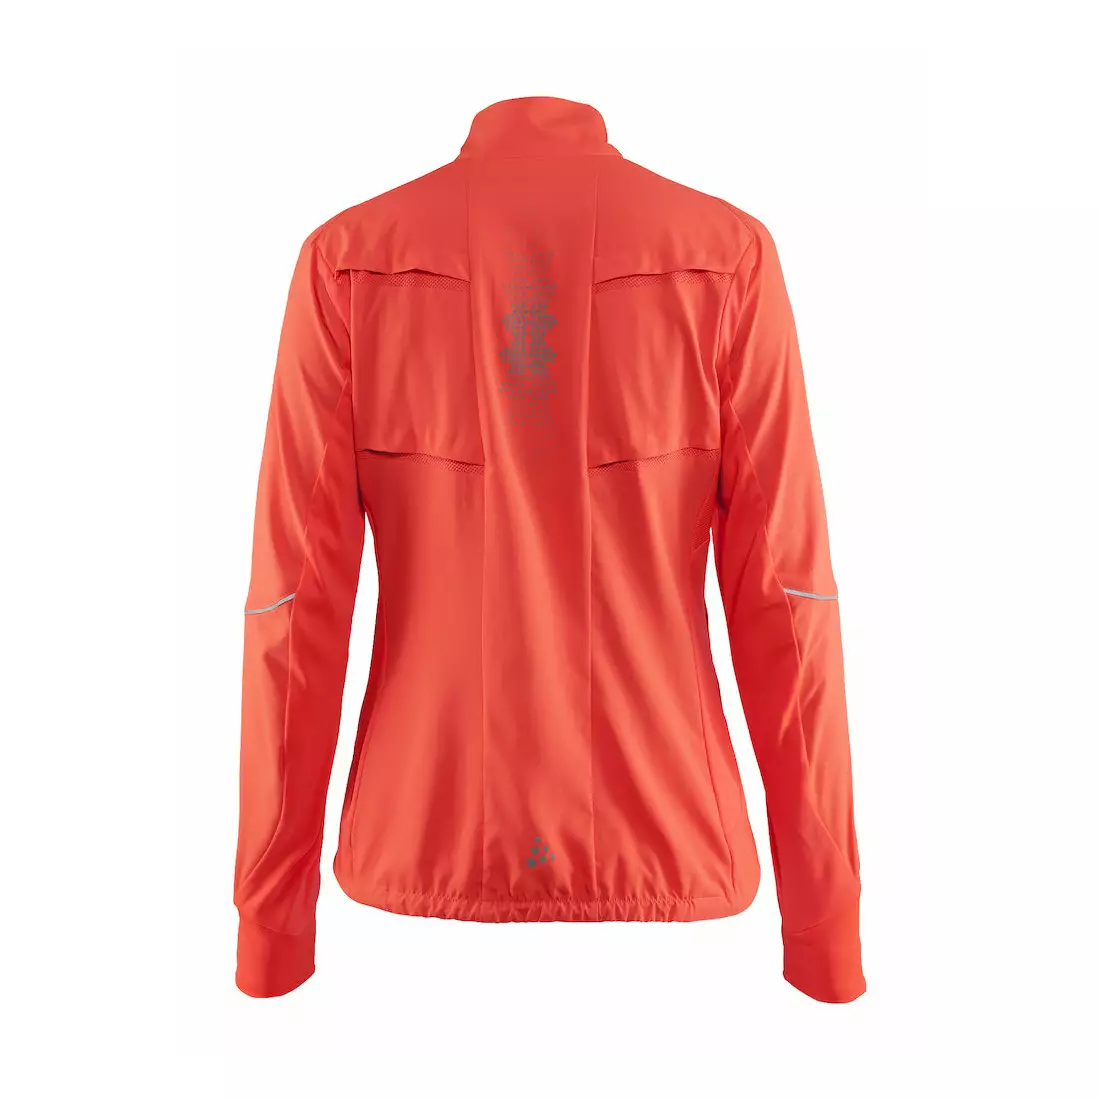 CRAFT BRILLIANT 2.0 lehká dámská běžecká bunda 1904306-1825 (fluorescenční růžová)